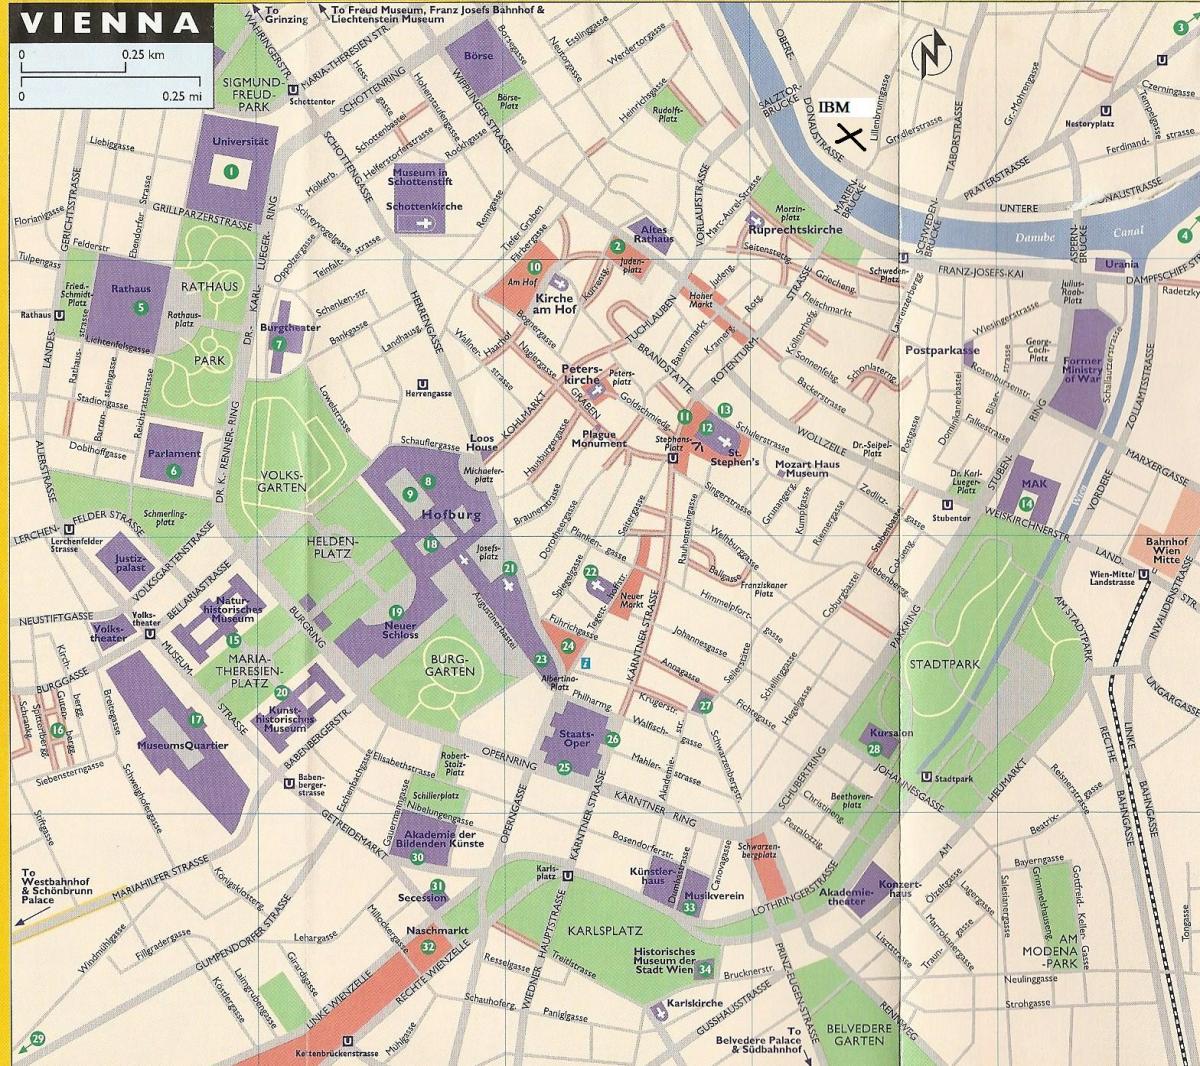 Zemljevid veleblagovnice na Dunaju 